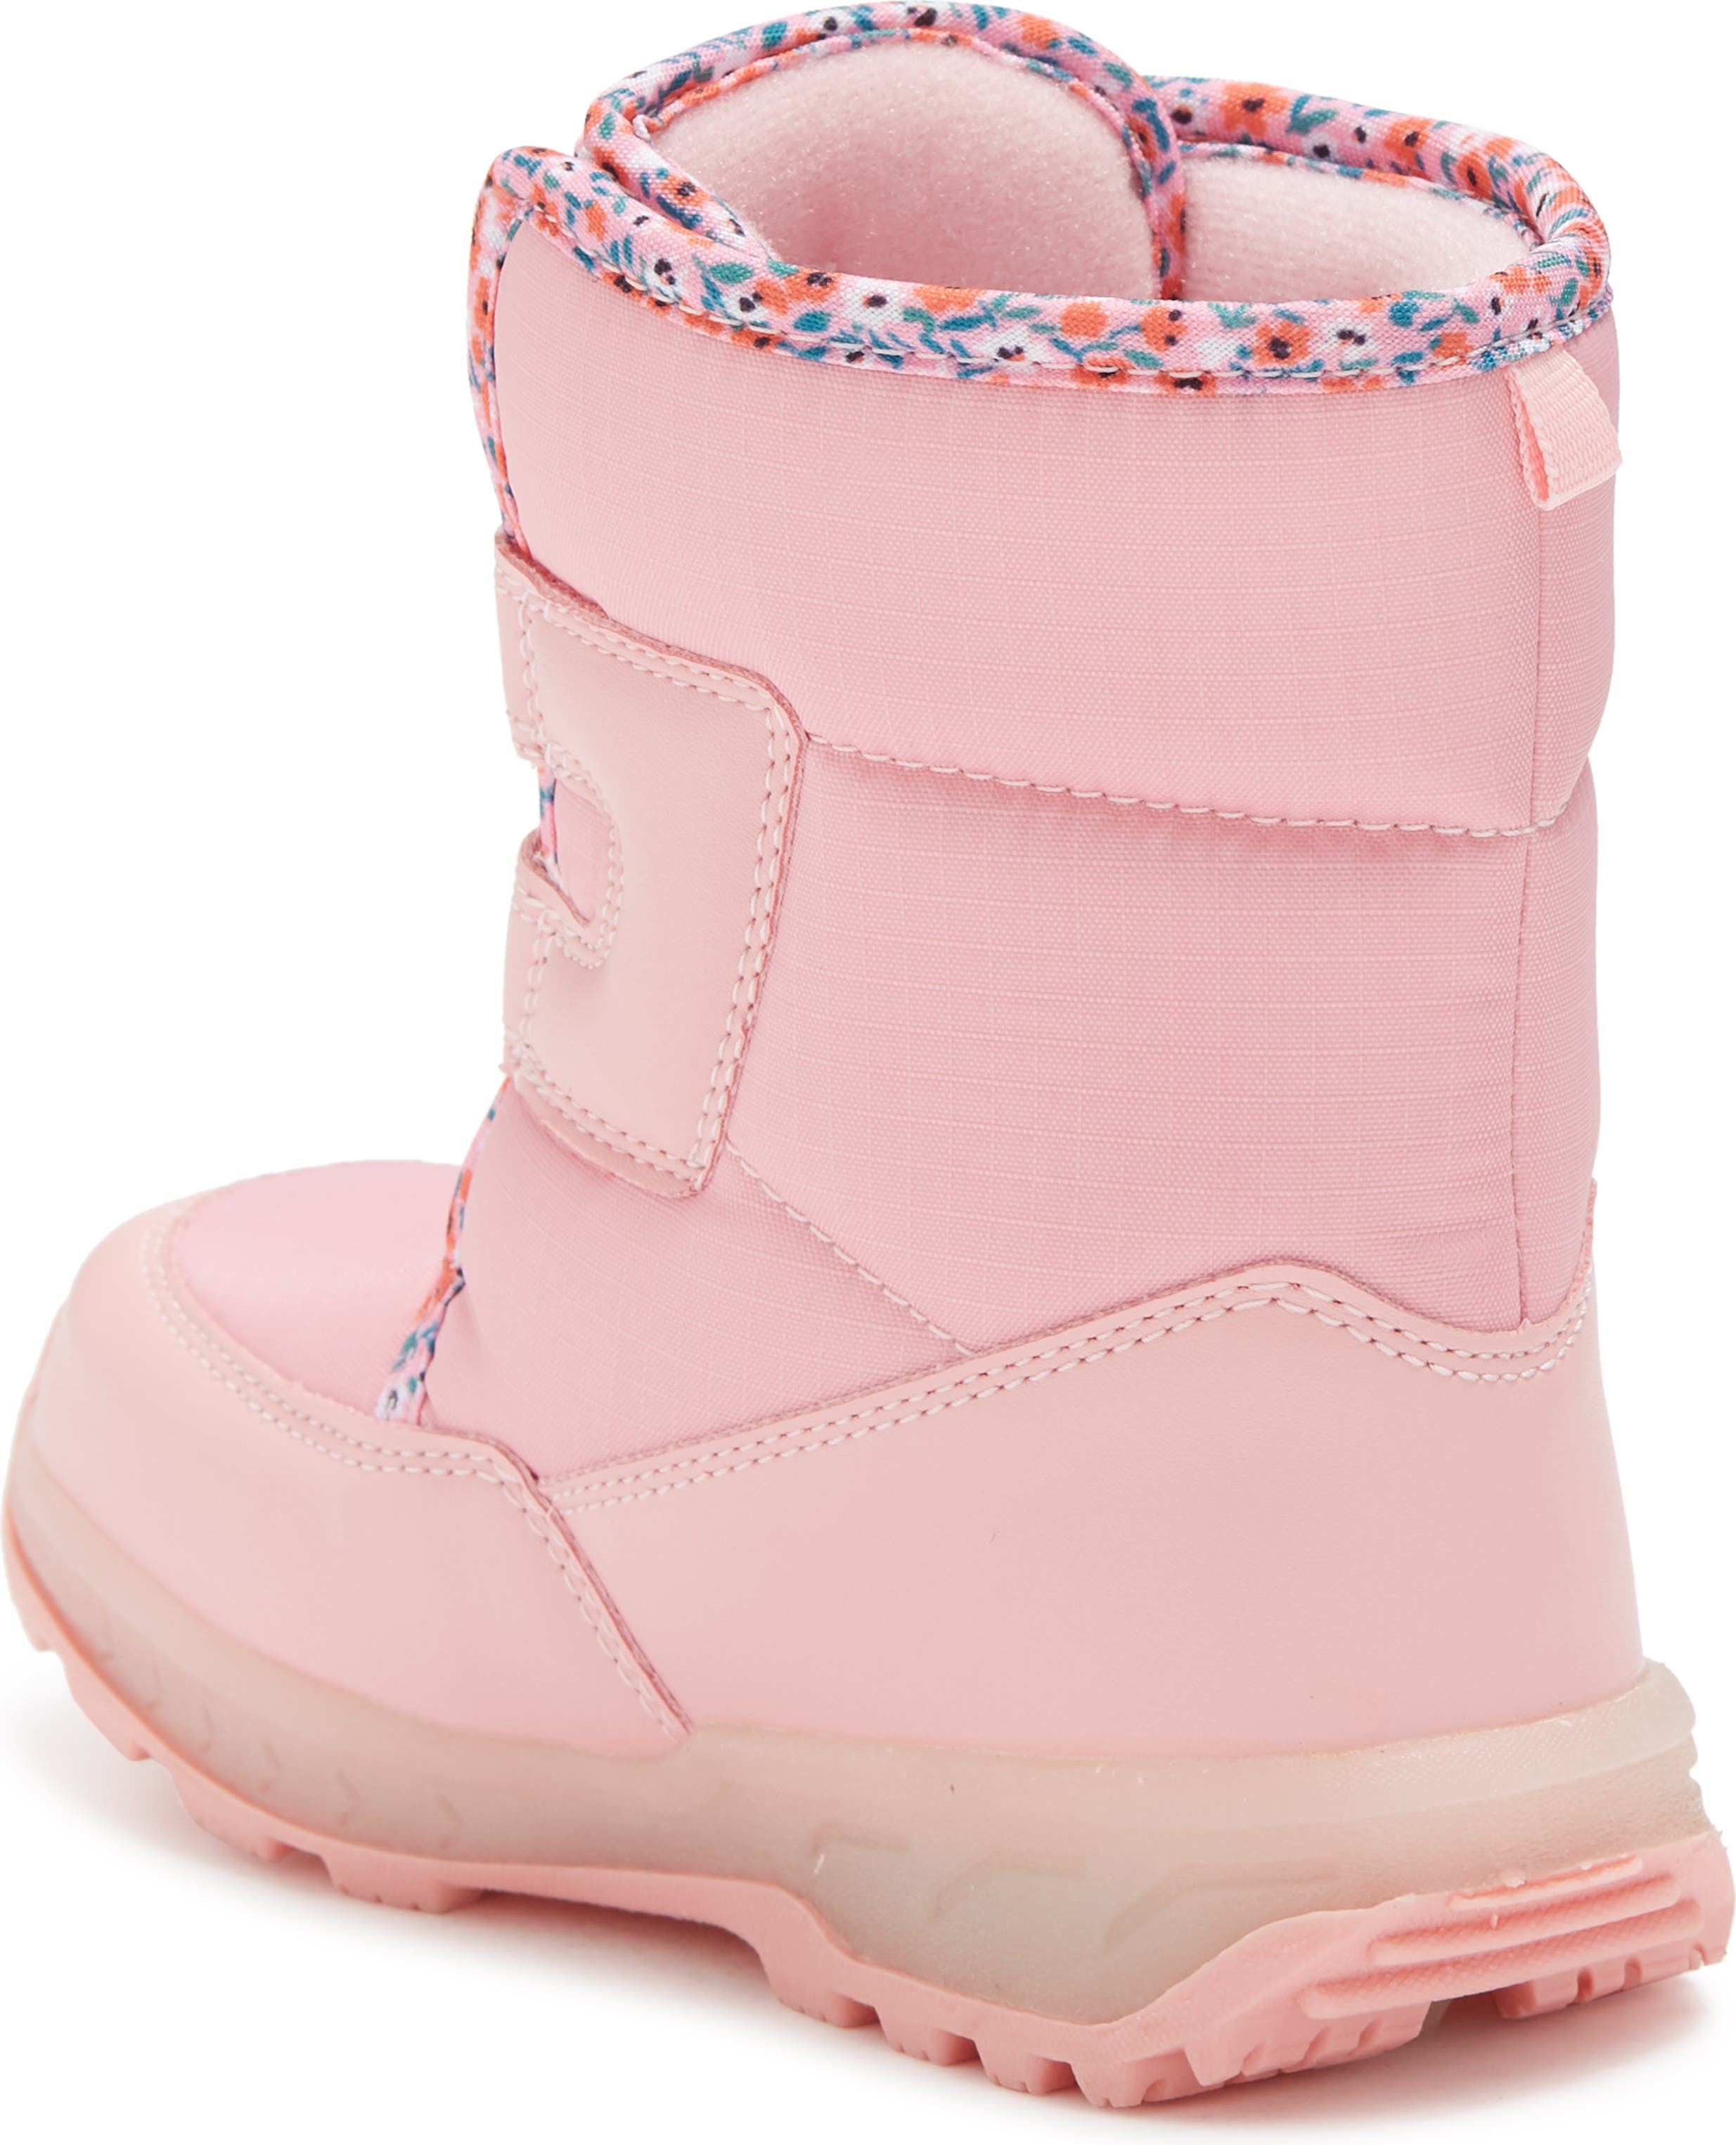 Carter's Girls' Grady Light Up Snow Boots 